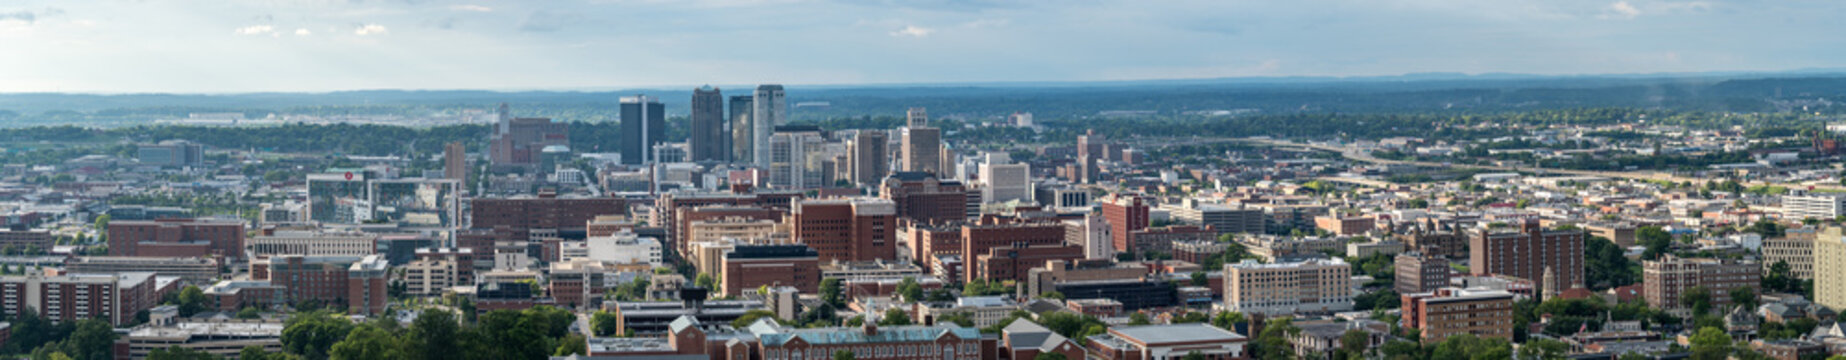 Panorama of Downtown Birmingham, Alabama